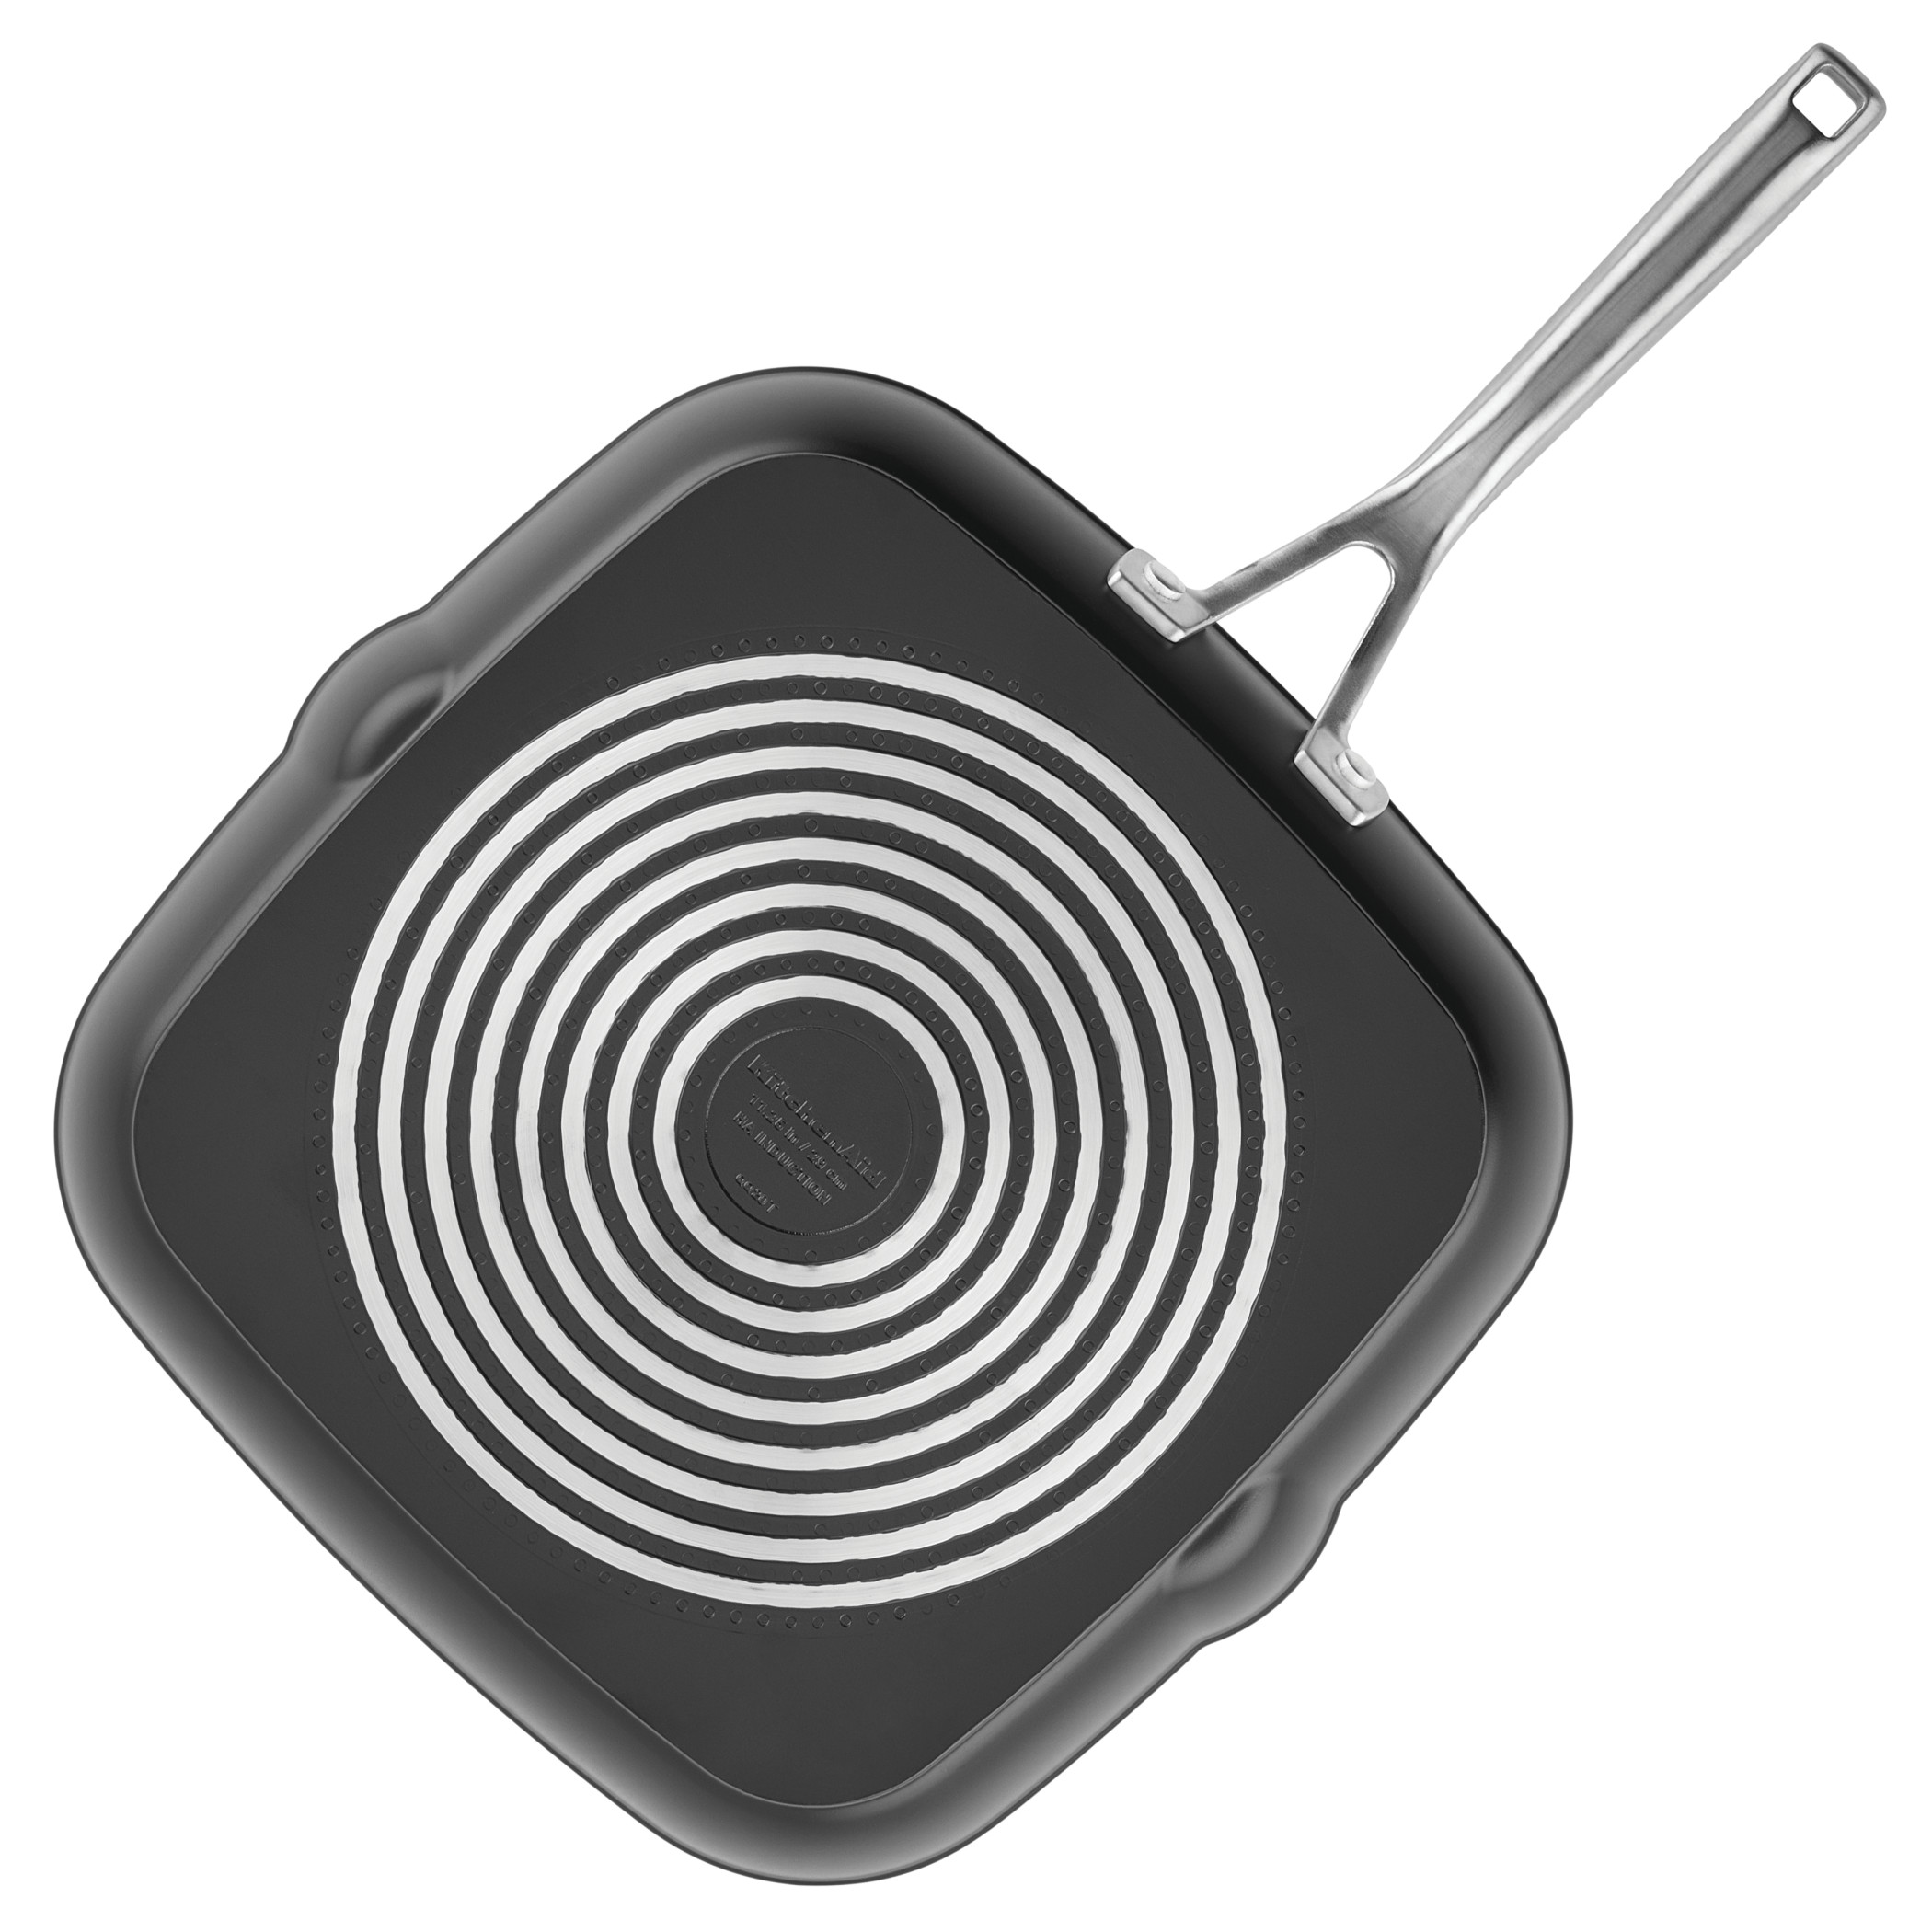 Bobikuke Nonstick Aluminum Square Grill Pan, 7.3 inch, Black, Non-Stick, Induction Compatible